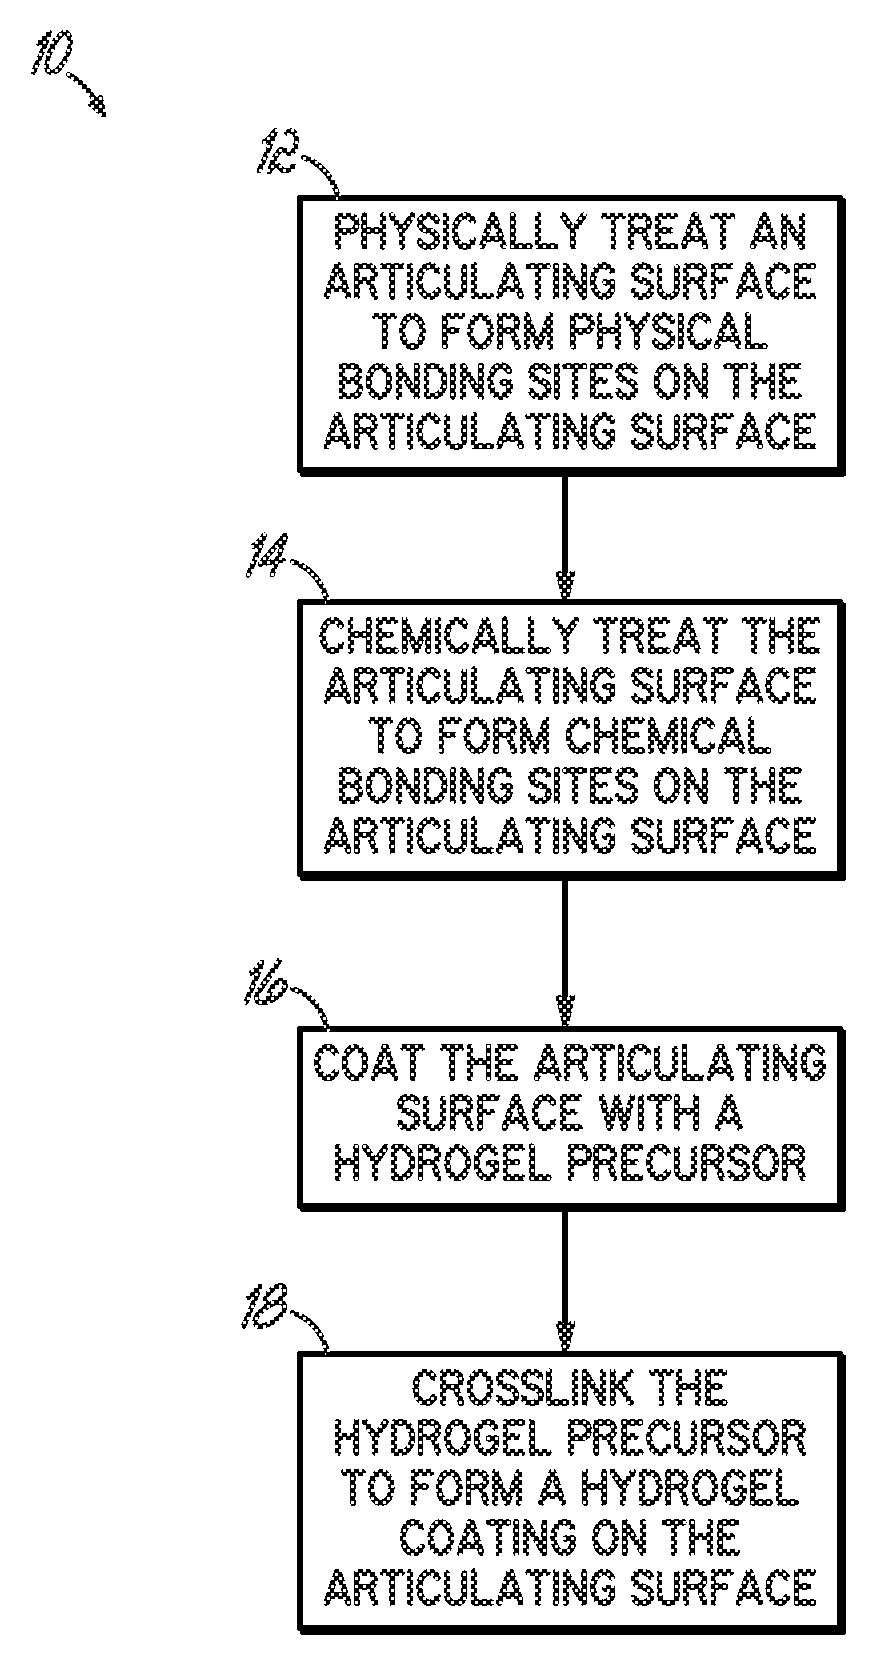 Methods of preparing hydrogel coatings